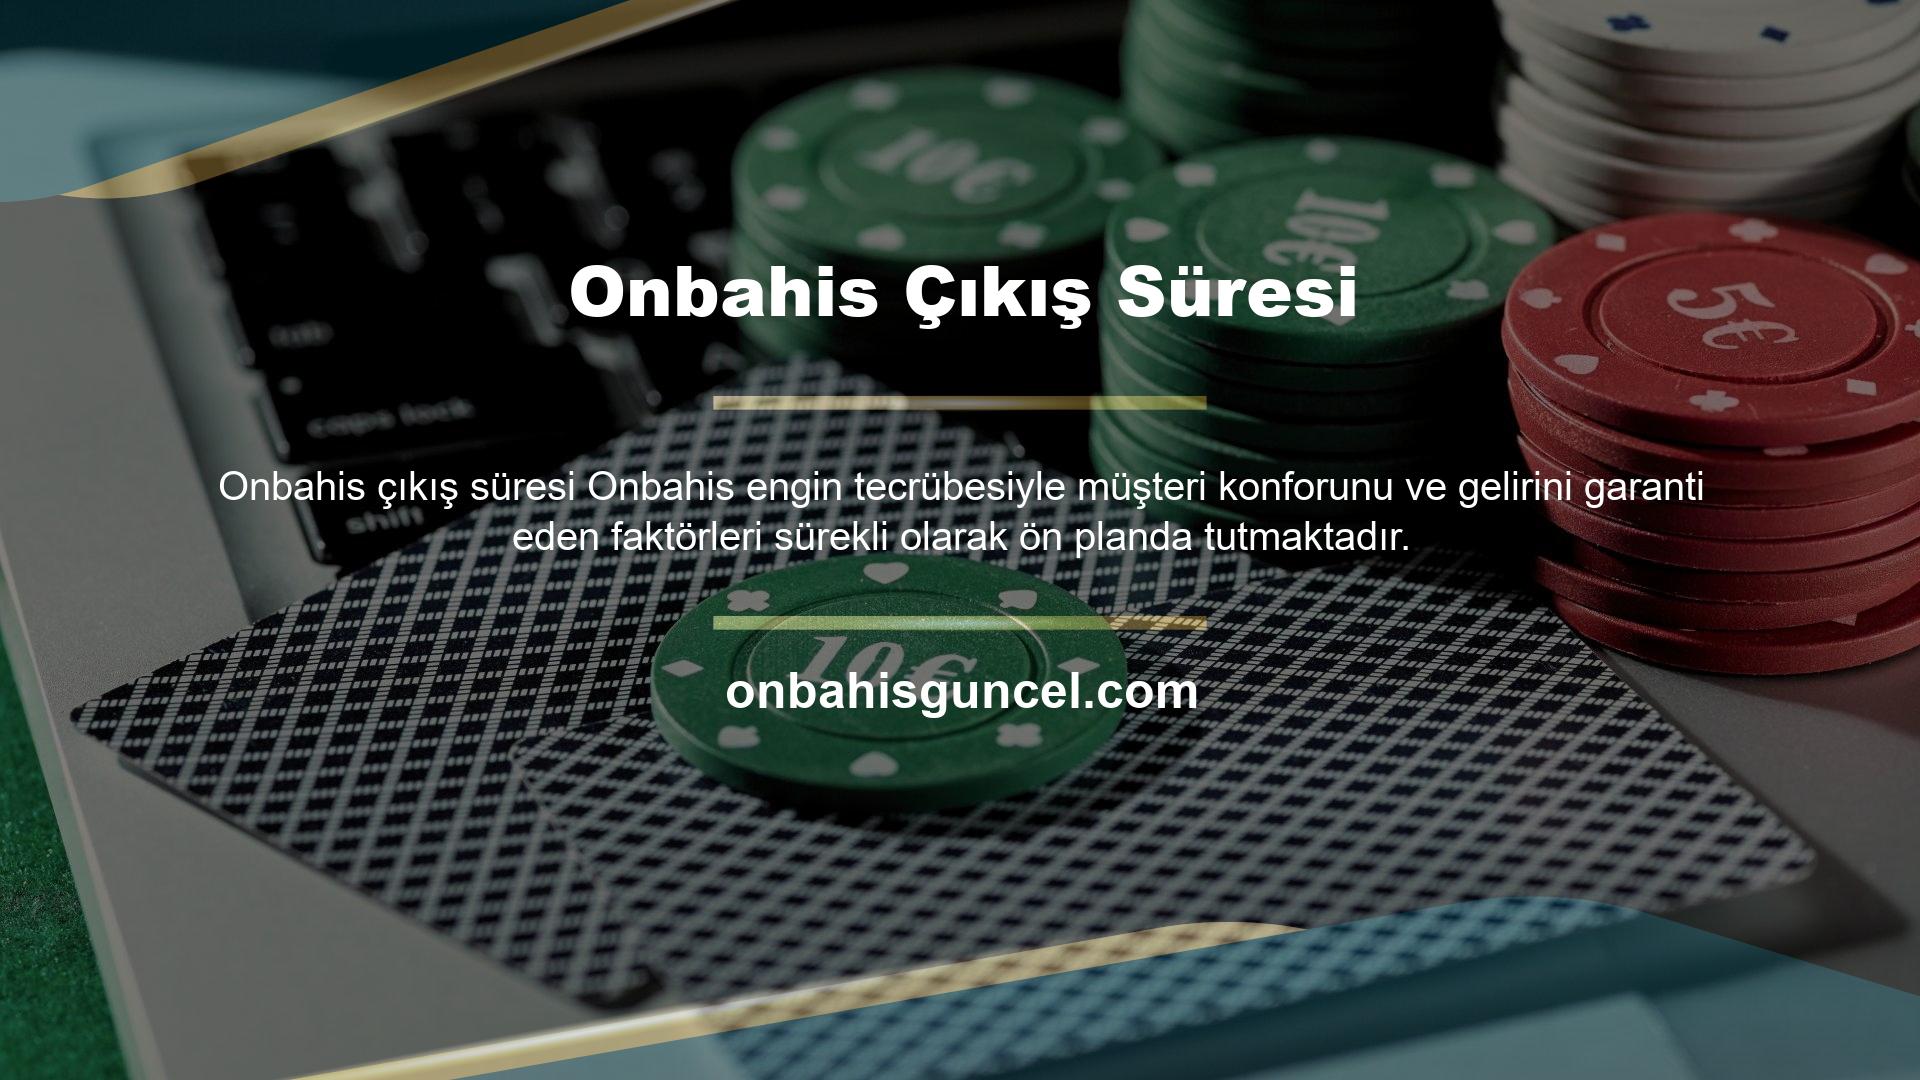 Onbahis müşterilerine birinci sınıf hizmet ve kalite sunmaya inanarak, Türkiye'nin en güvenilir casino platformlarından biri olarak ün kazanmıştır